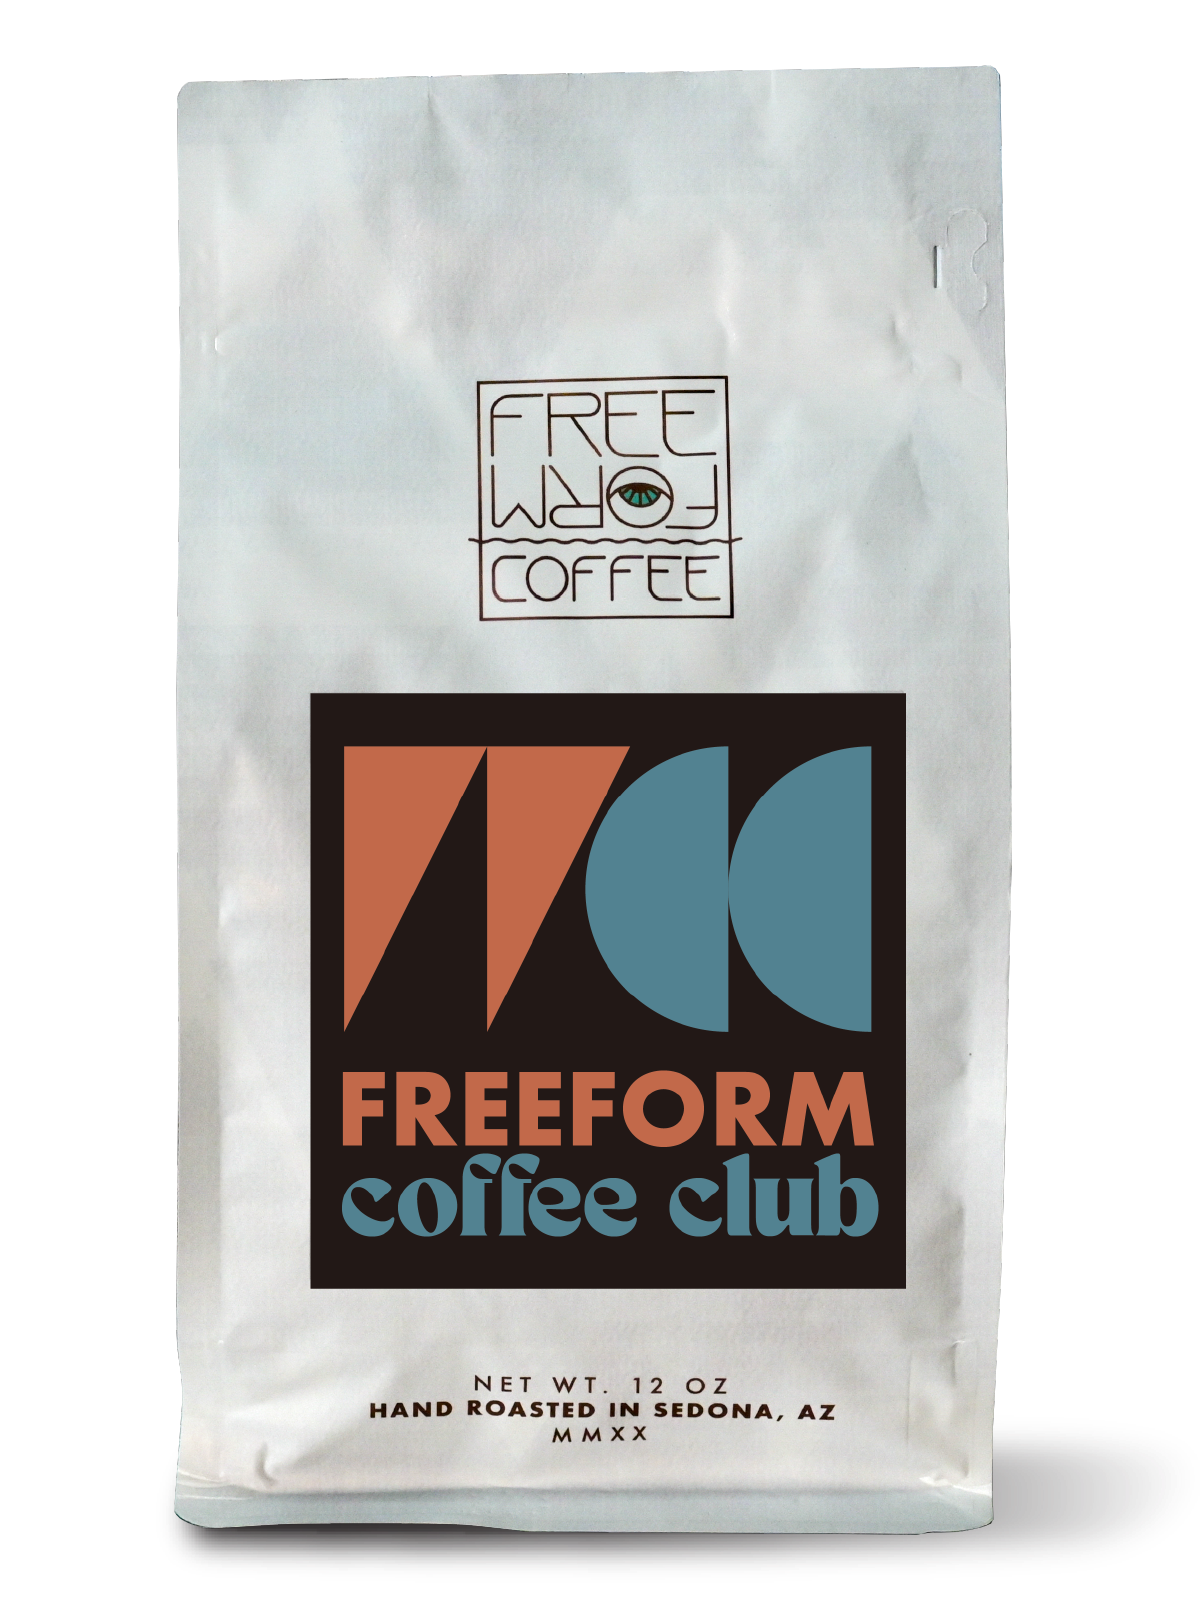 FreeForm Coffee Club Subscription